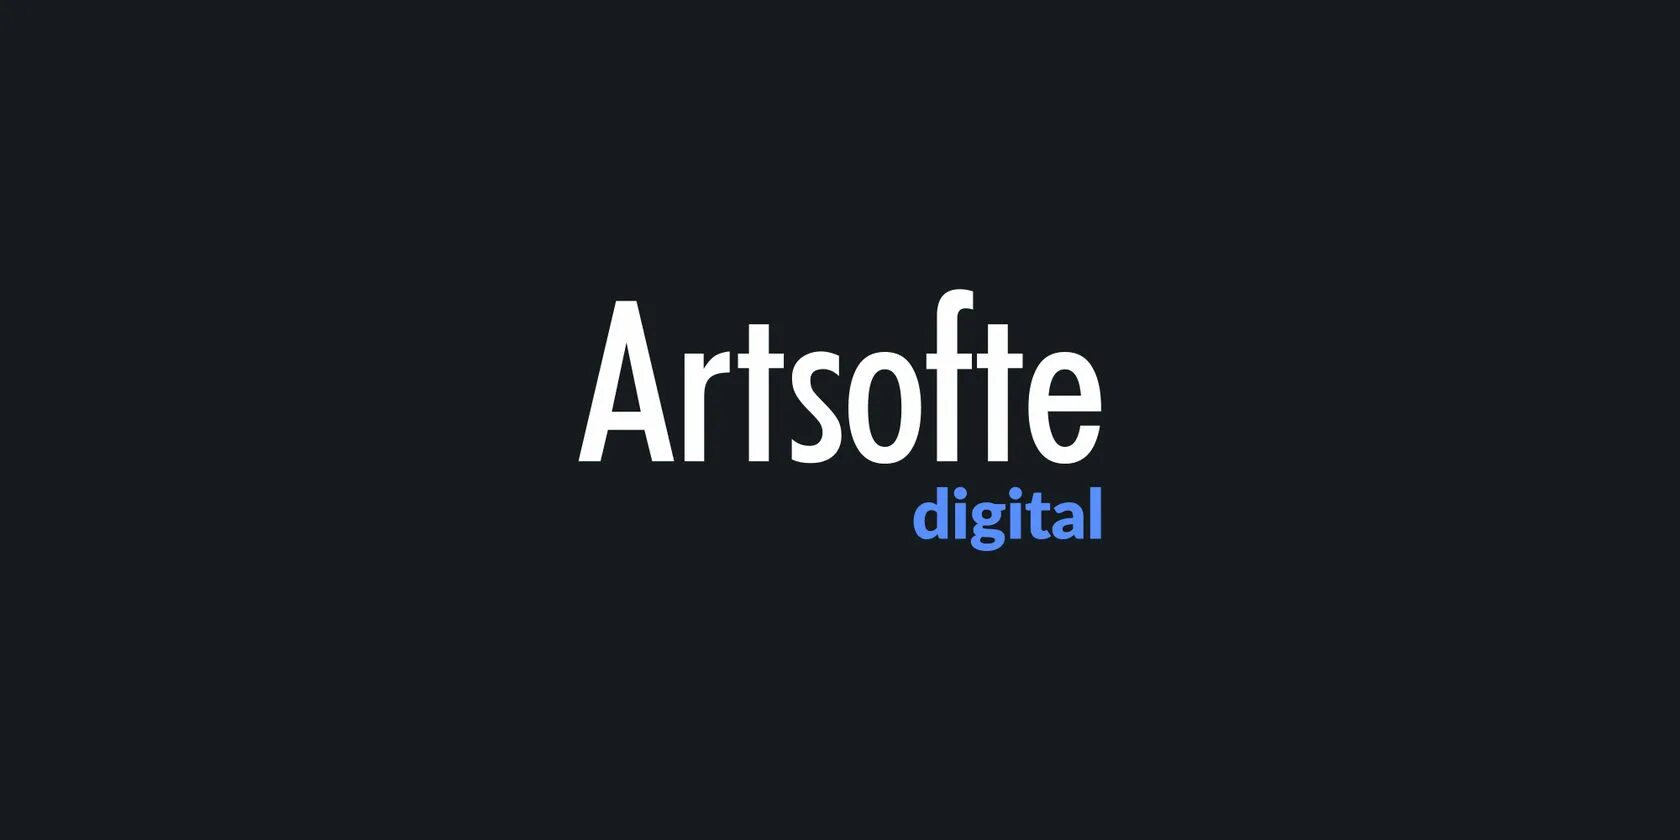 Digital екатеринбург. Artsofte Екатеринбург. Artsofte Digital. АРТСОФТ диджитал директор. Логотип Artsofte.